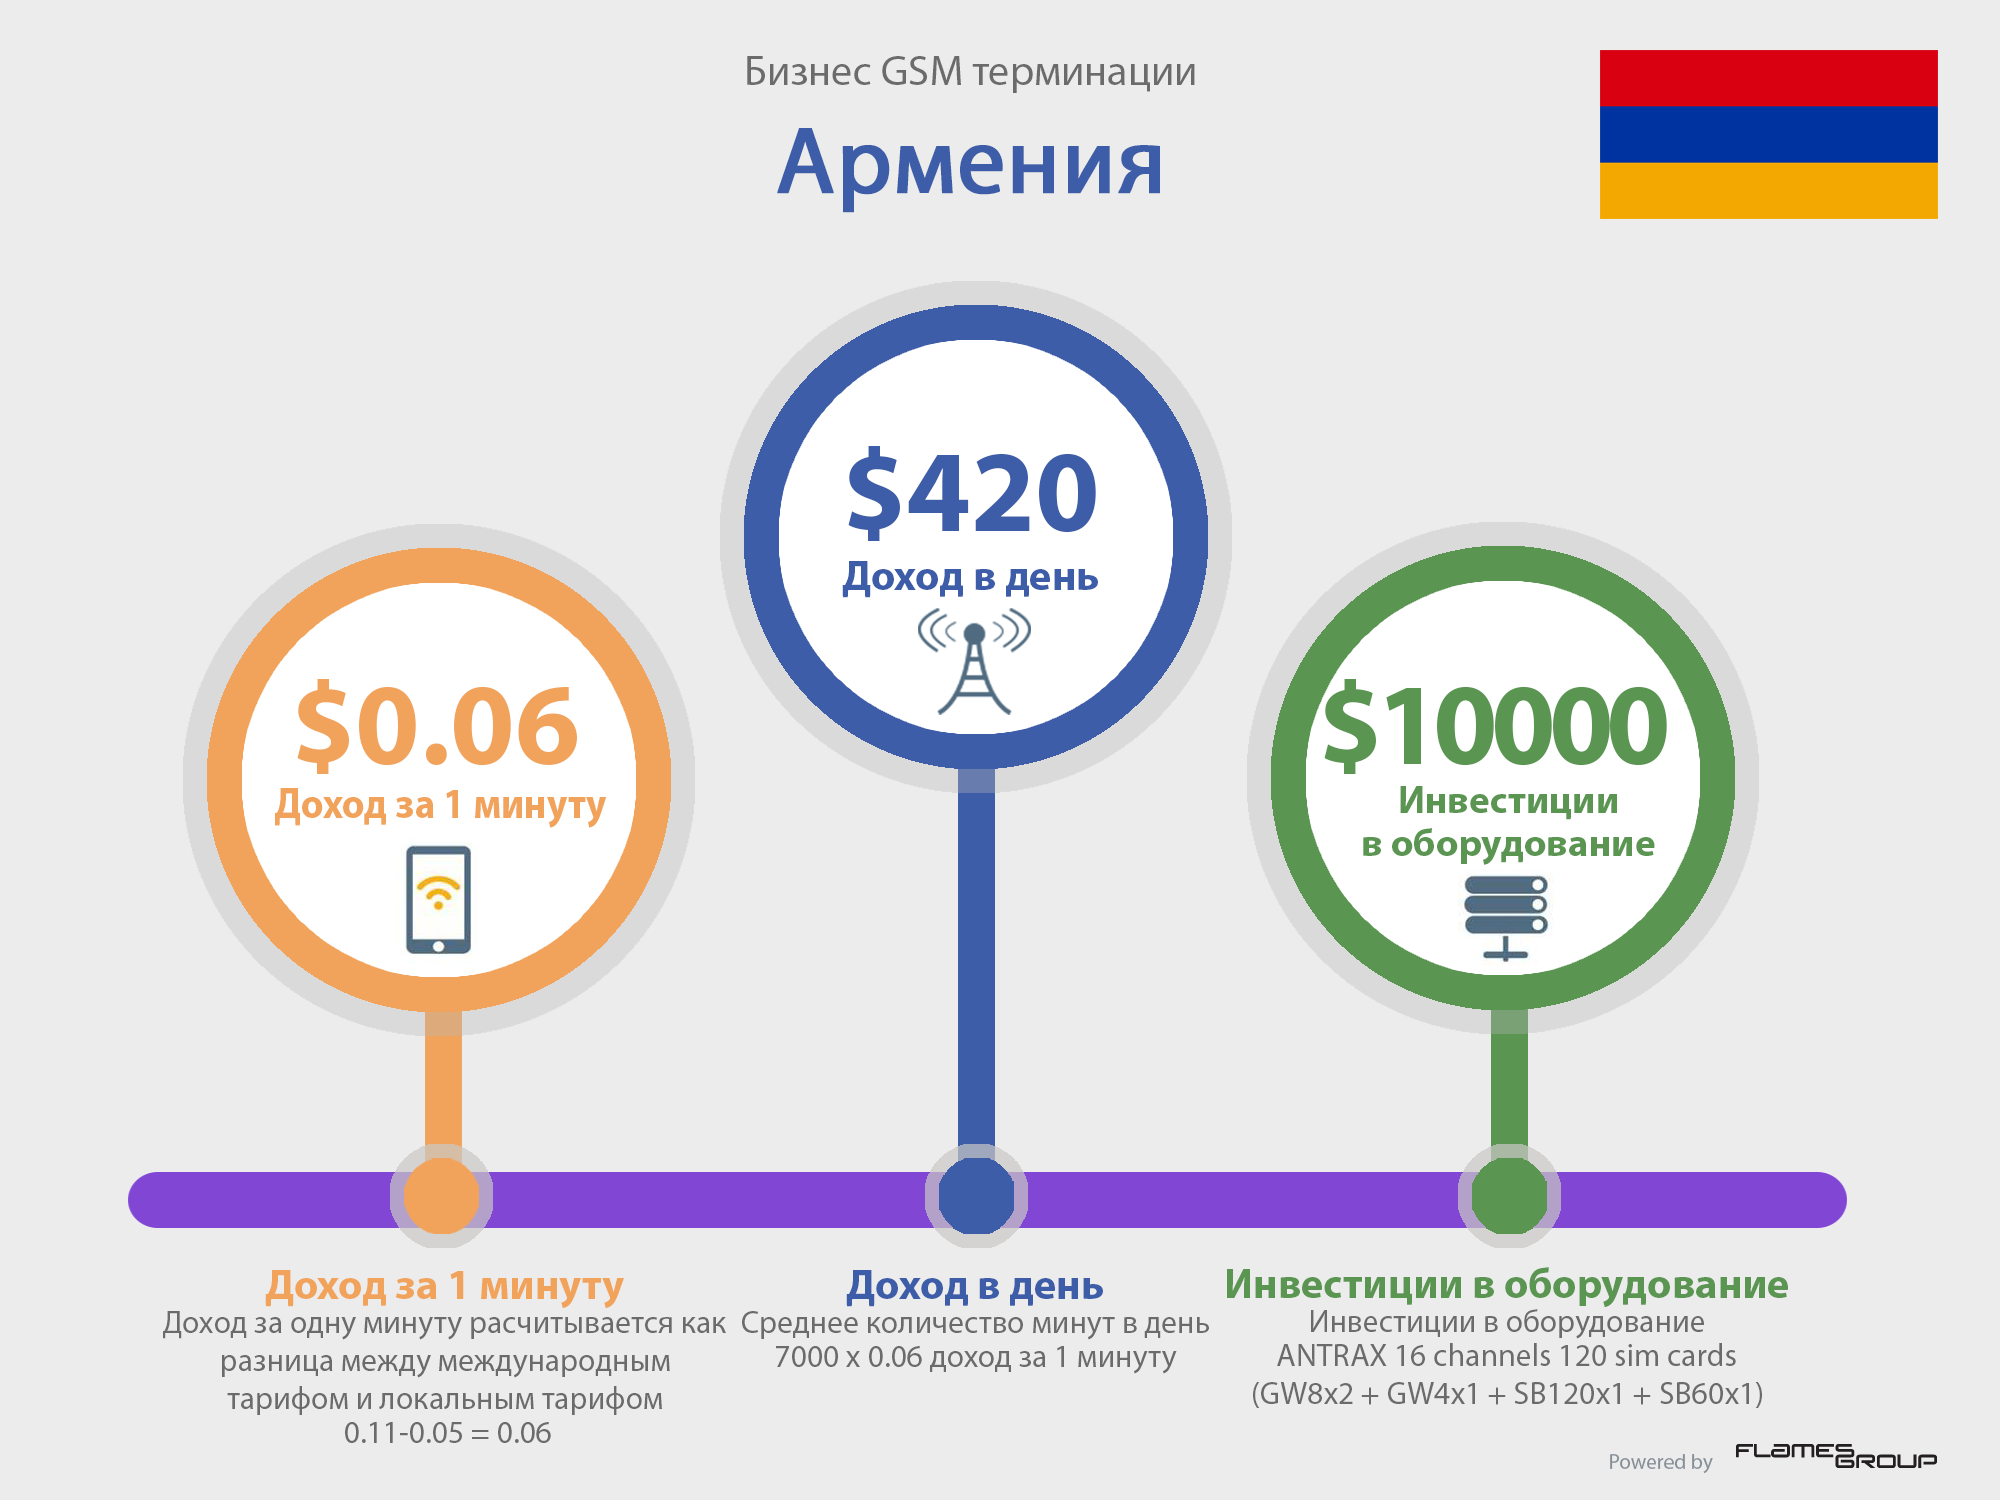 GSM терминация в Армении - Инфографика ANTRAX